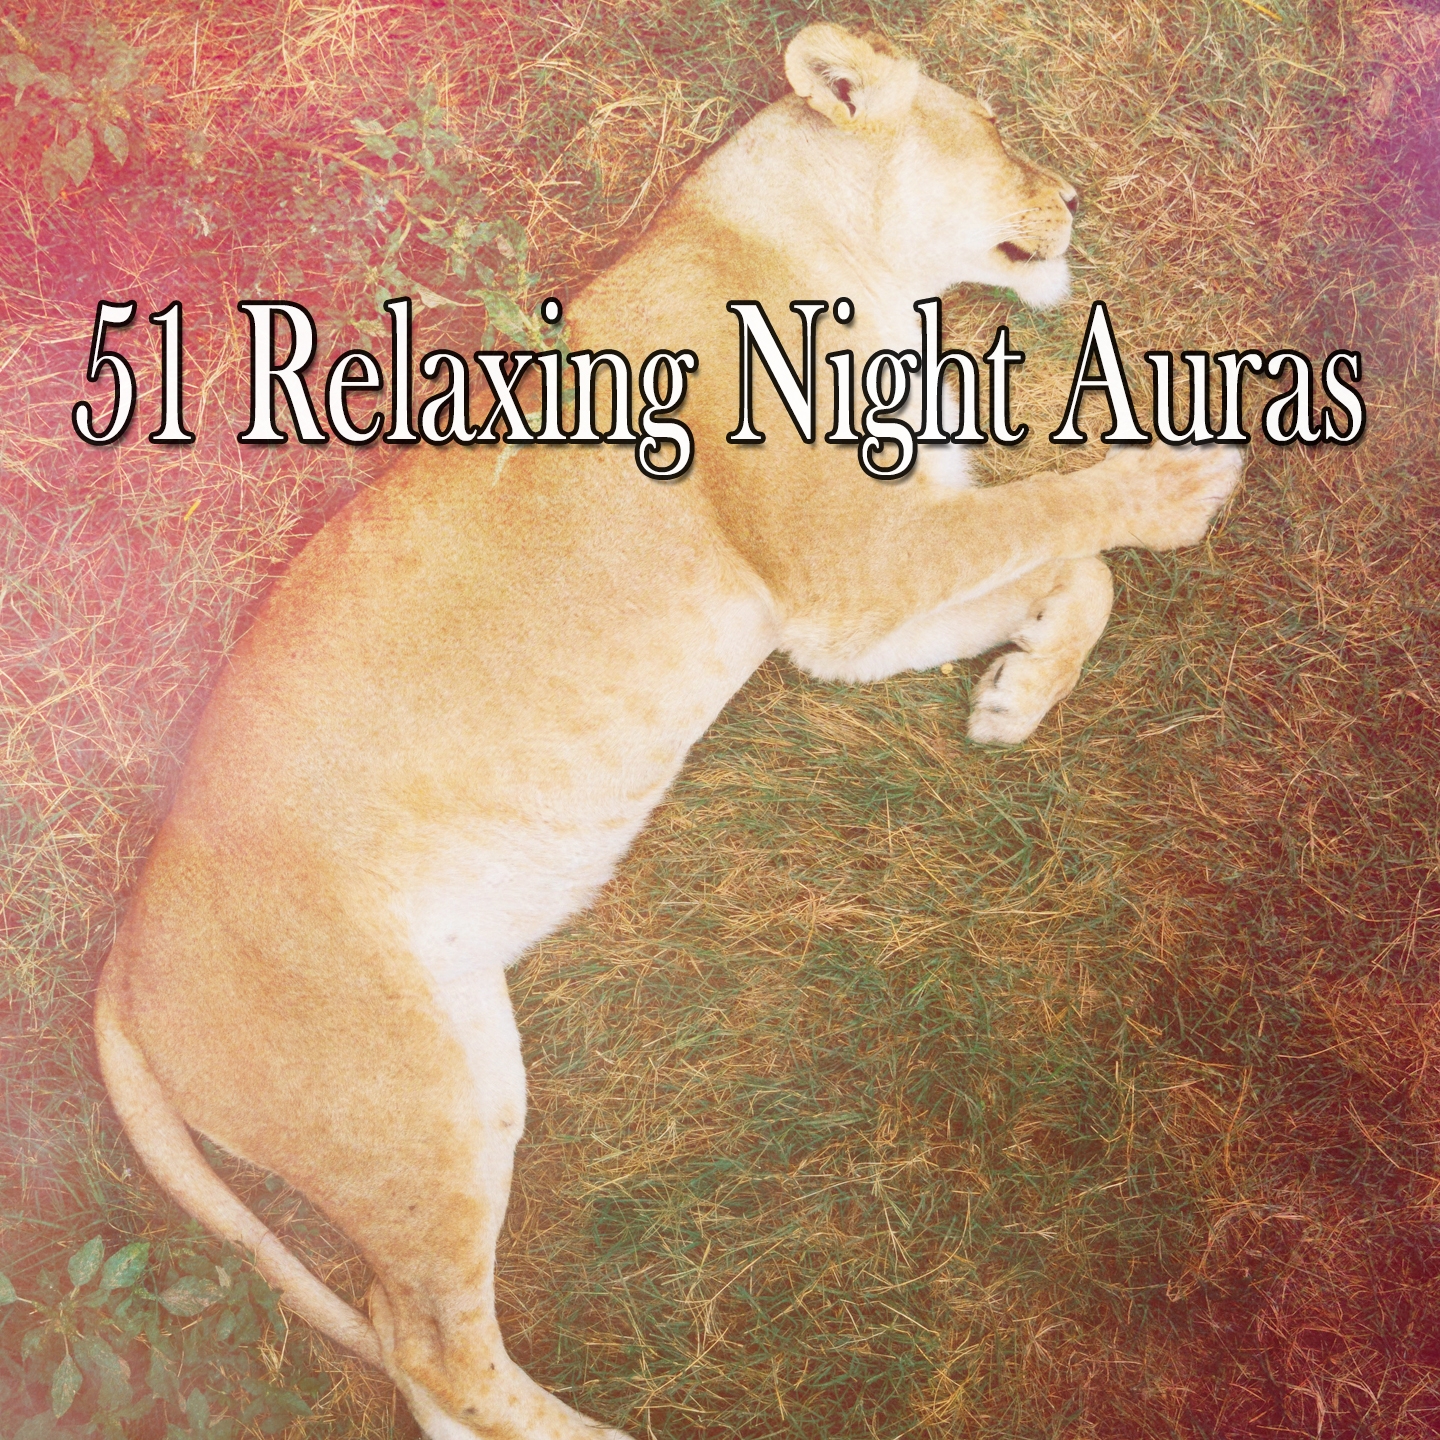 51 Relaxing Night Auras